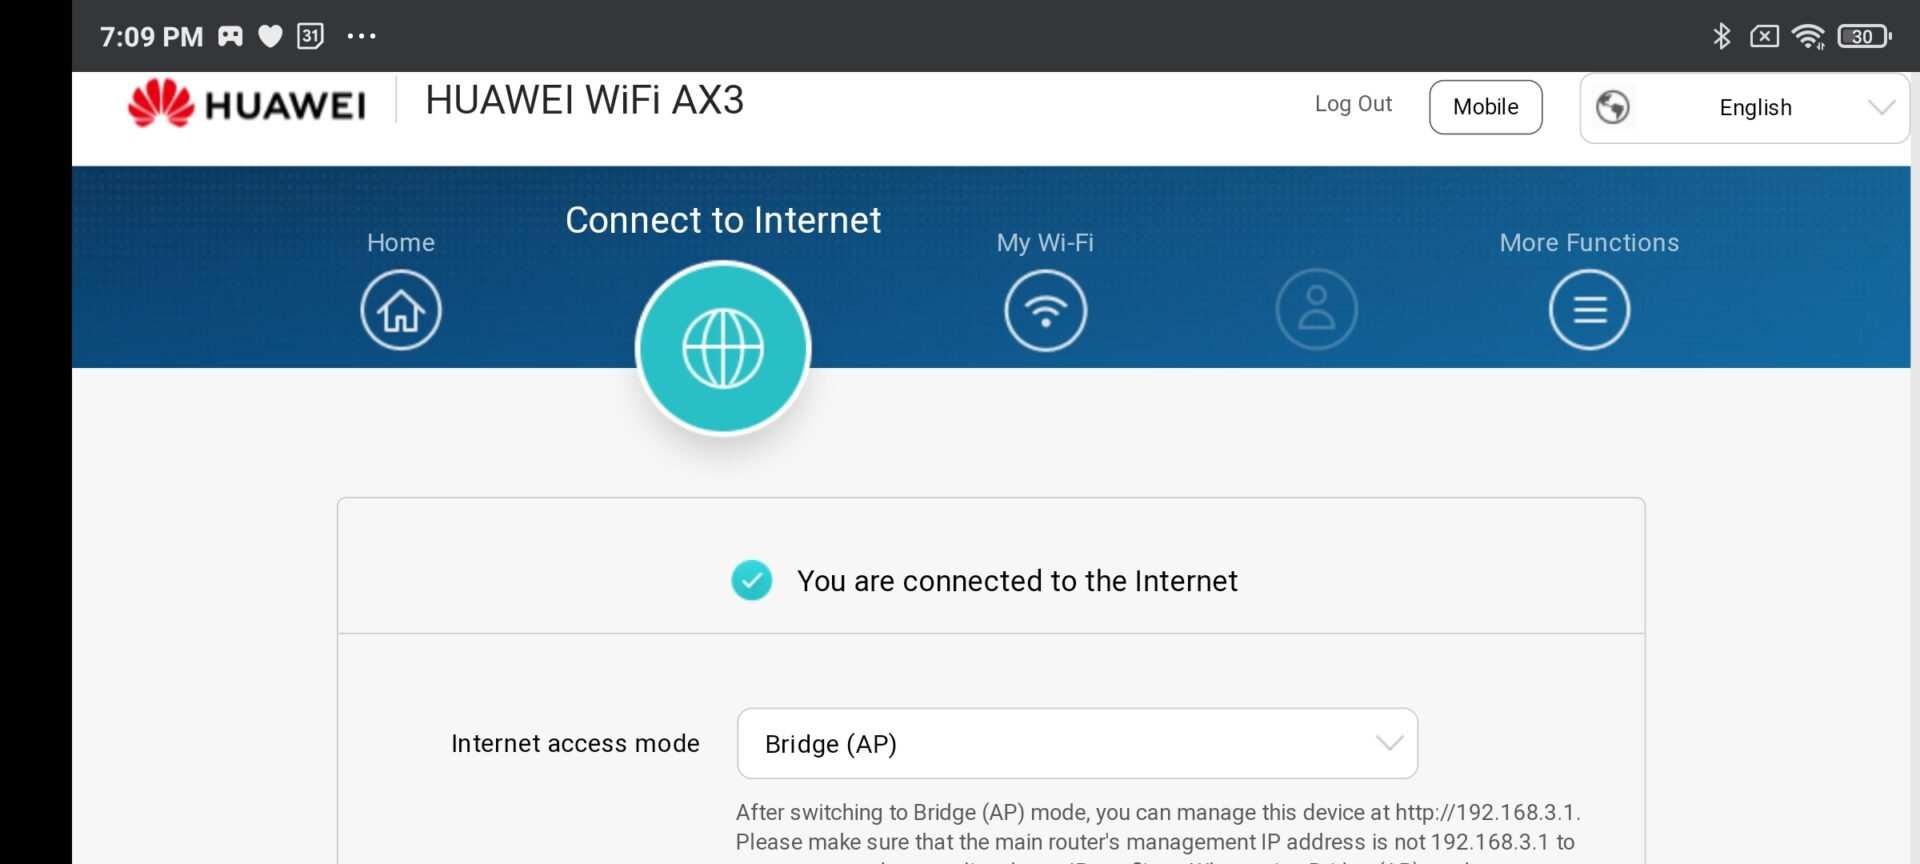 Goondu review: Huawei WiFi AX3
March 22nd, 2021 | by Wilson Wong
Internet
0
Huawei WiFi AX3 Photo: Handout 